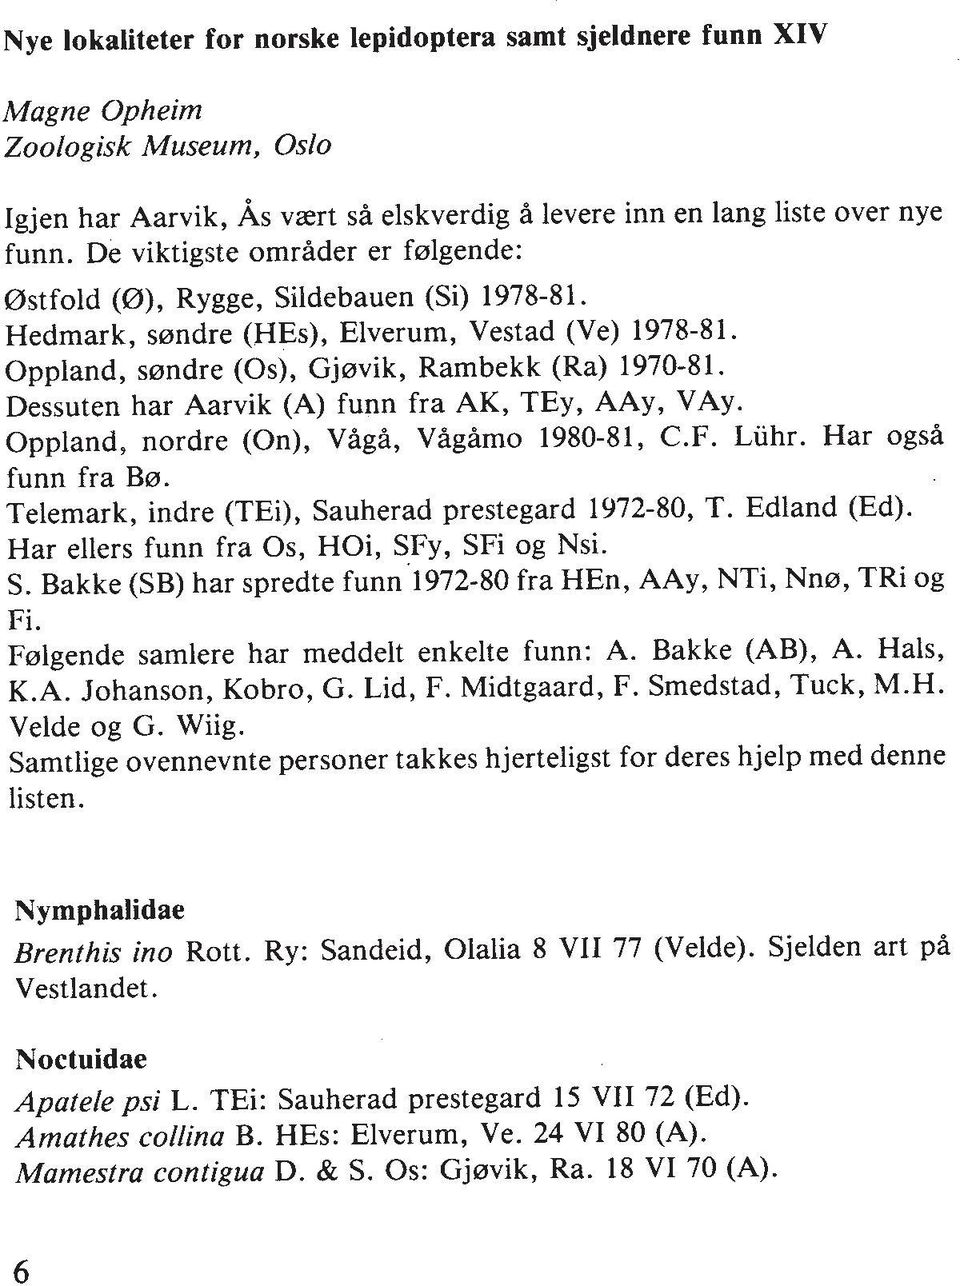 Dessuten har Aarvik (A) funn fra AK, TEy, AAy, VAy. Oppland, nordre (On), Vigf, VfgAmo 1980-81, C.F. Liihr. Har ogsf funn fra B0. Telemark, indre (TEi), Sauherad prestegard 1972-80, T. Edland (Ed).